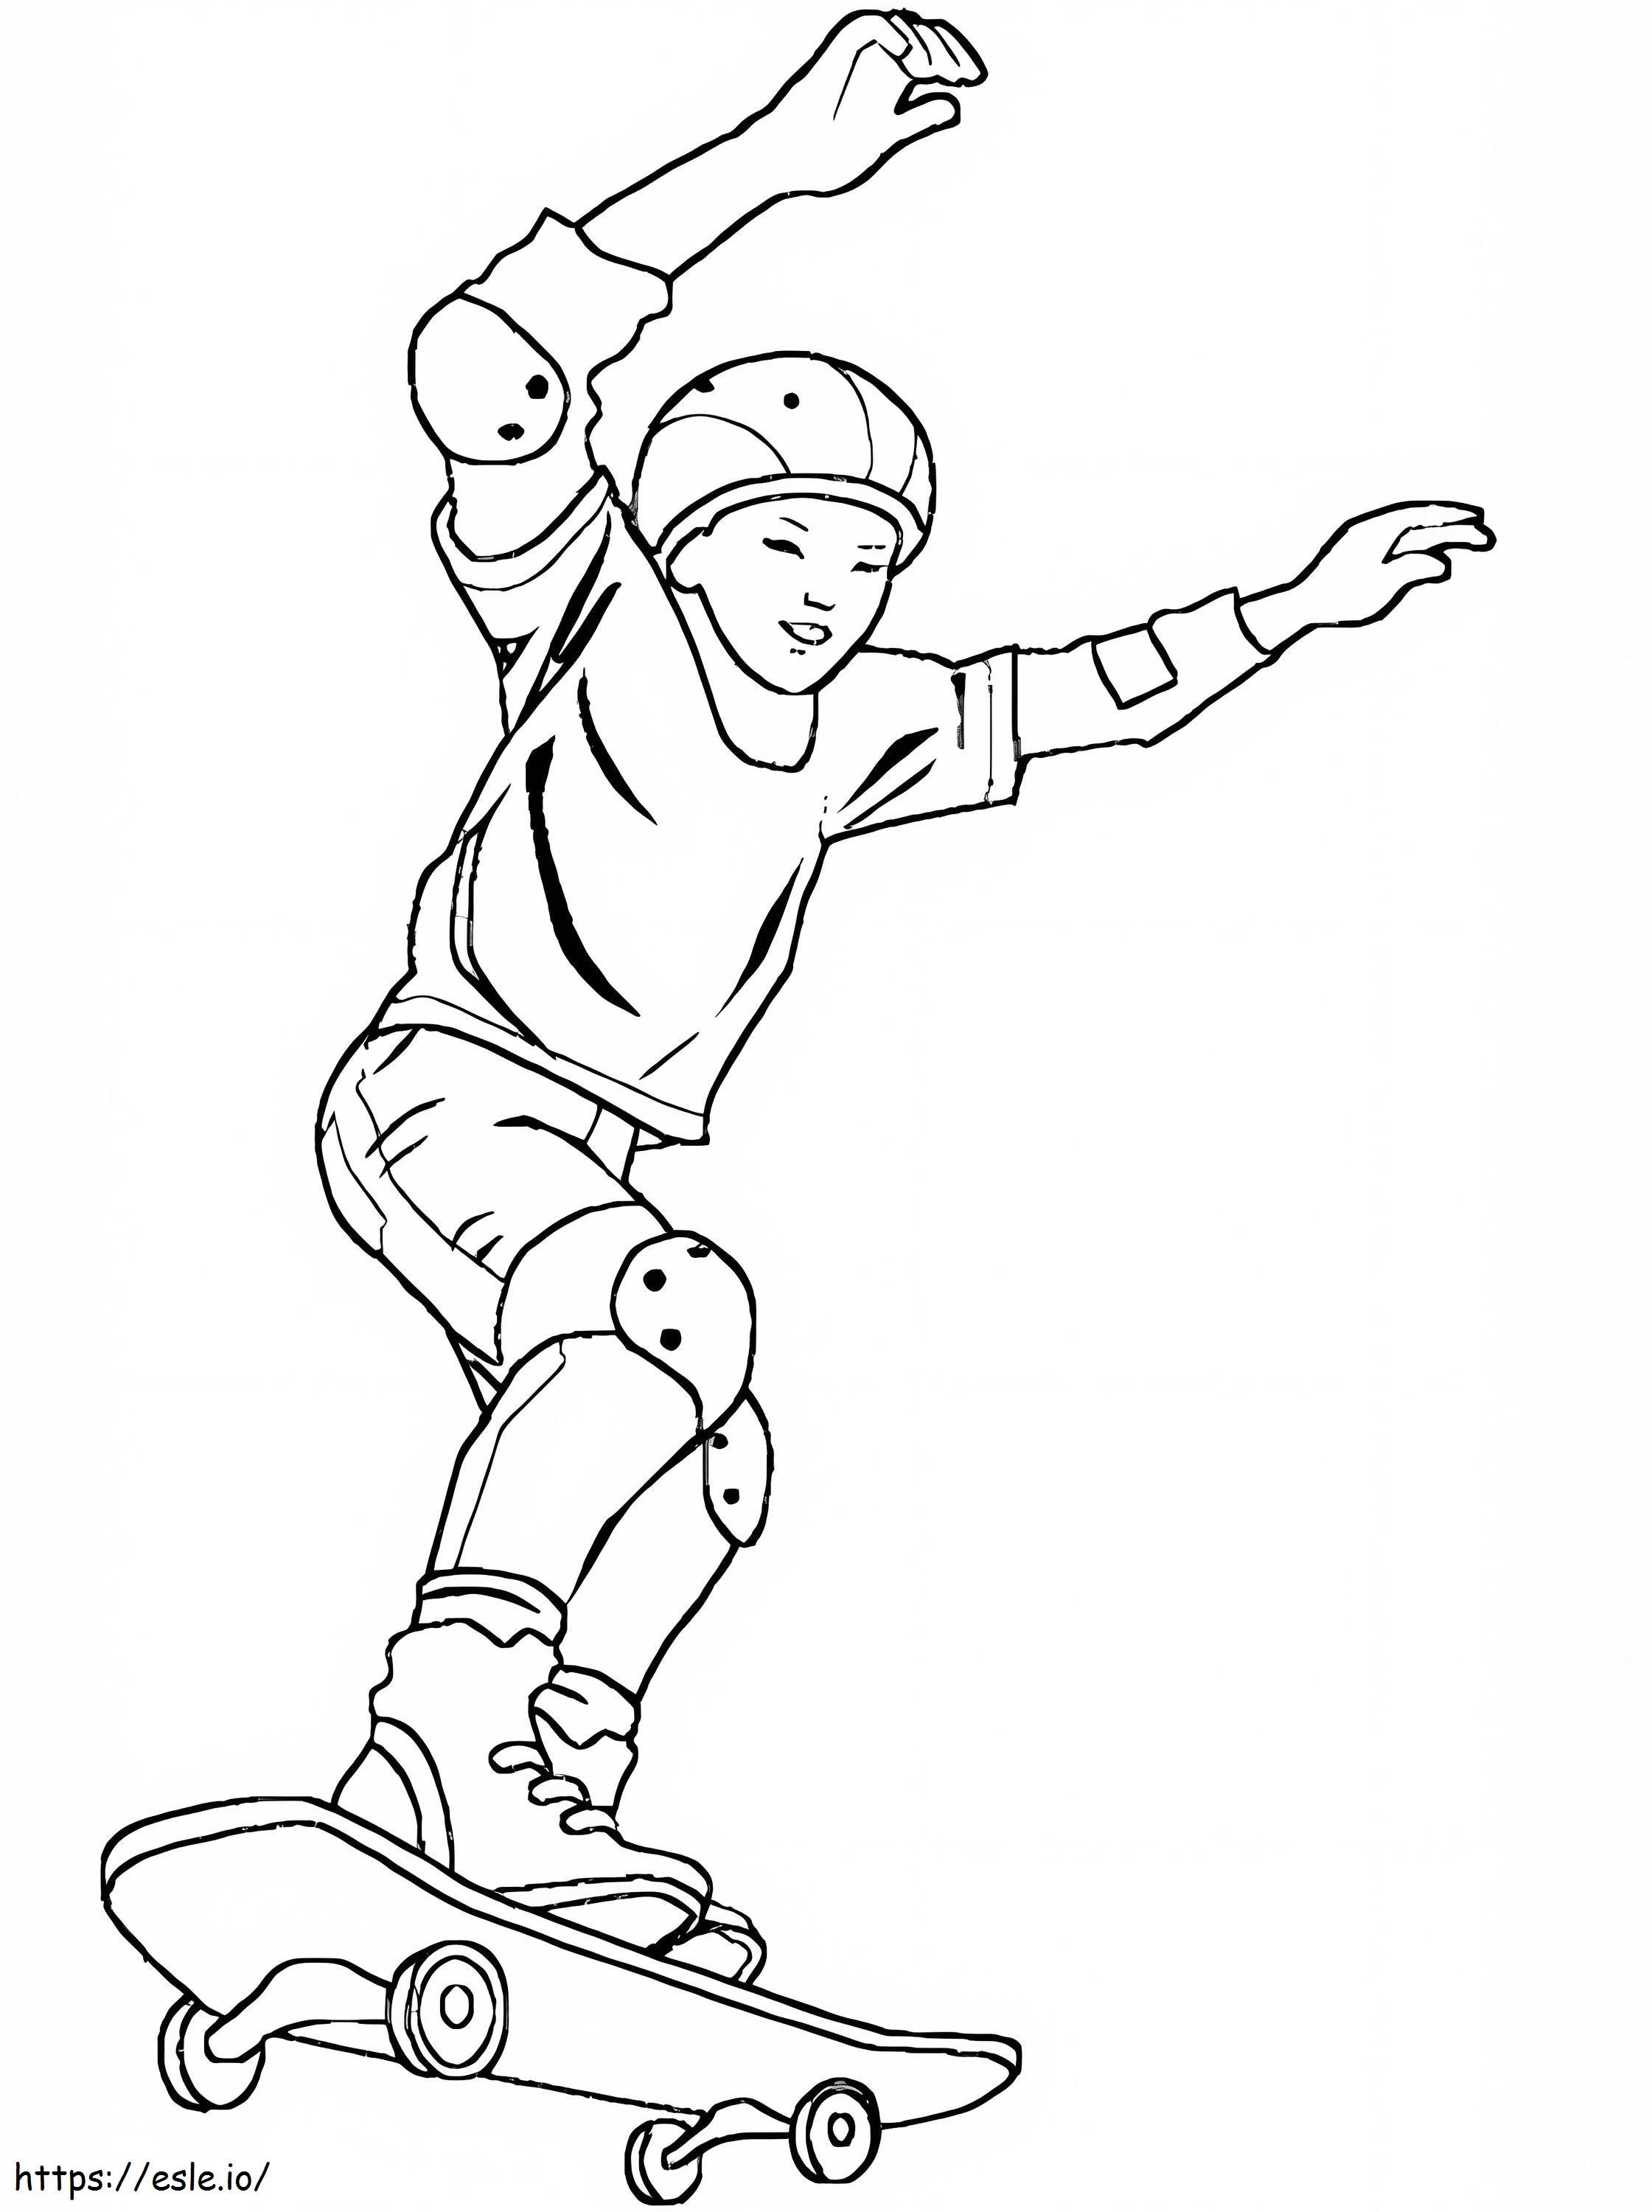 Cooler Junge auf Skateboard ausmalbilder